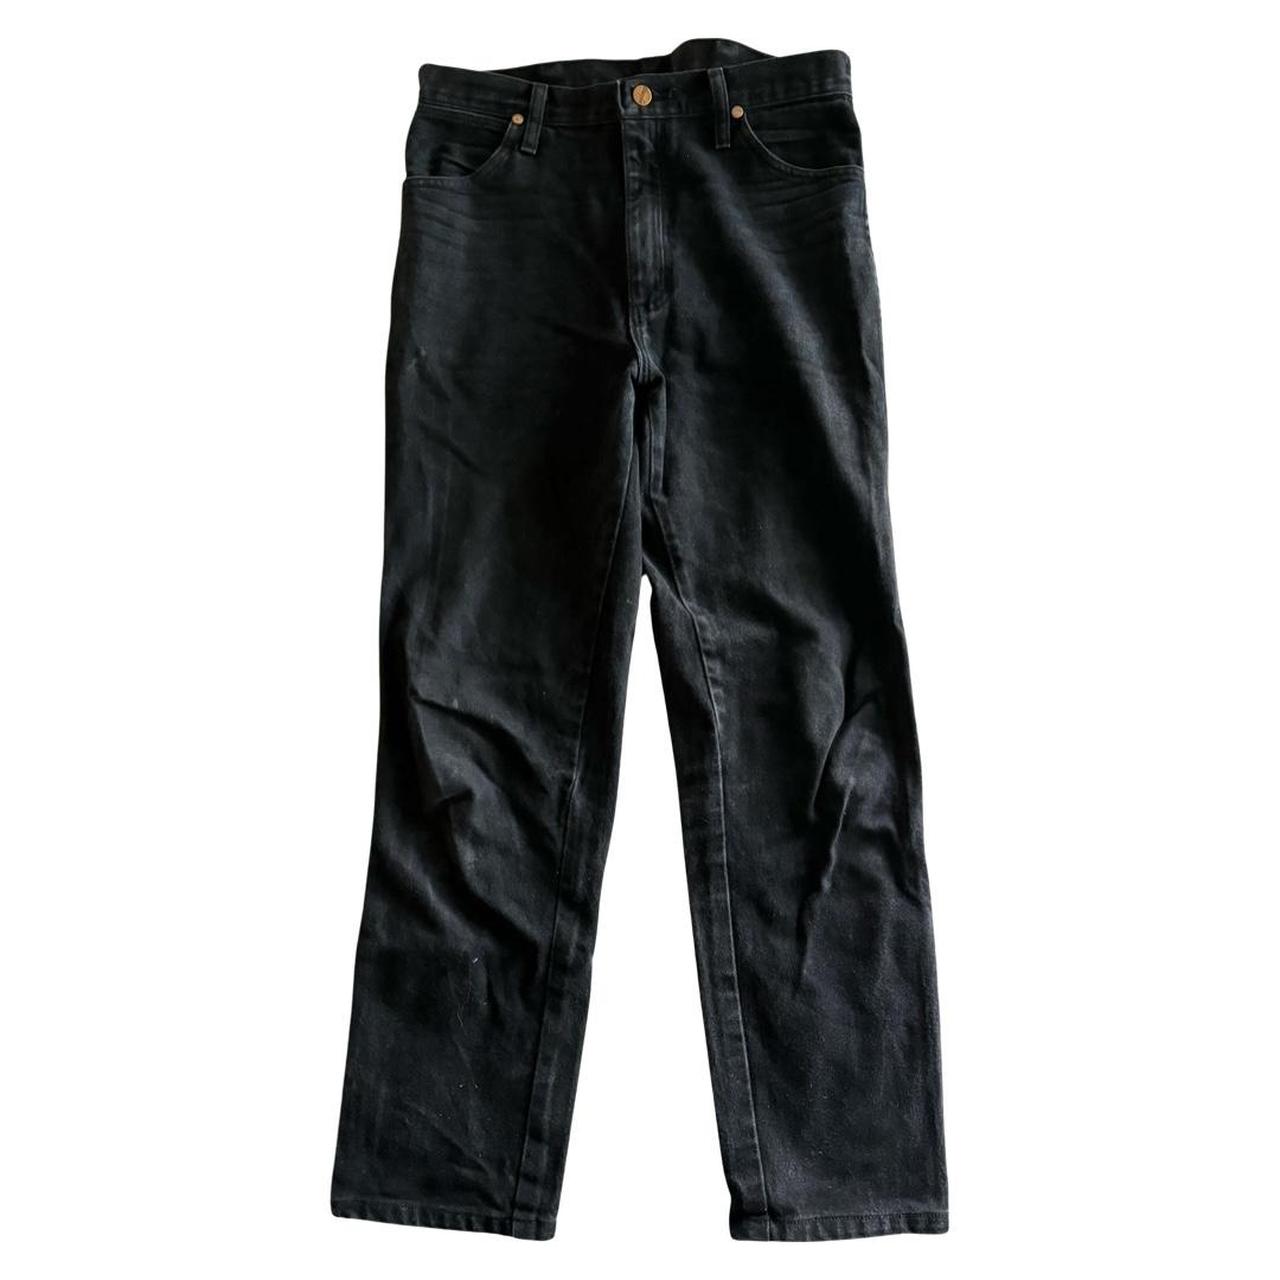 Wrangler Cowboy Cut Slim Fit - Mens Jeans - 936Wbk 